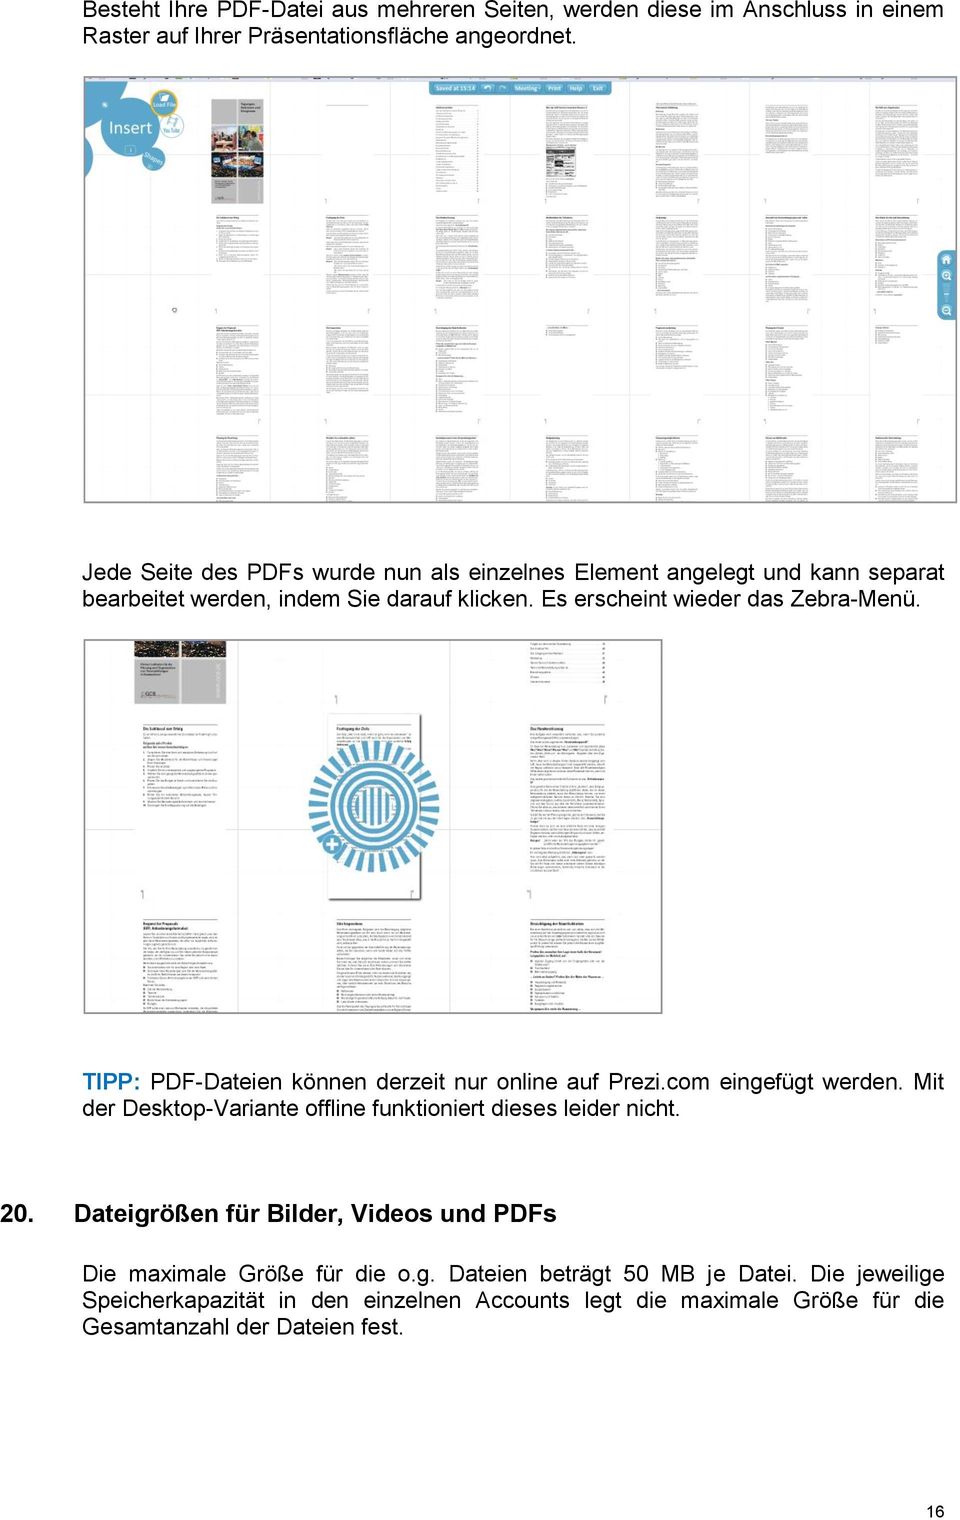 TIPP: PDF-Dateien können derzeit nur online auf Prezi.com eingefügt werden. Mit der Desktop-Variante offline funktioniert dieses leider nicht. 20.